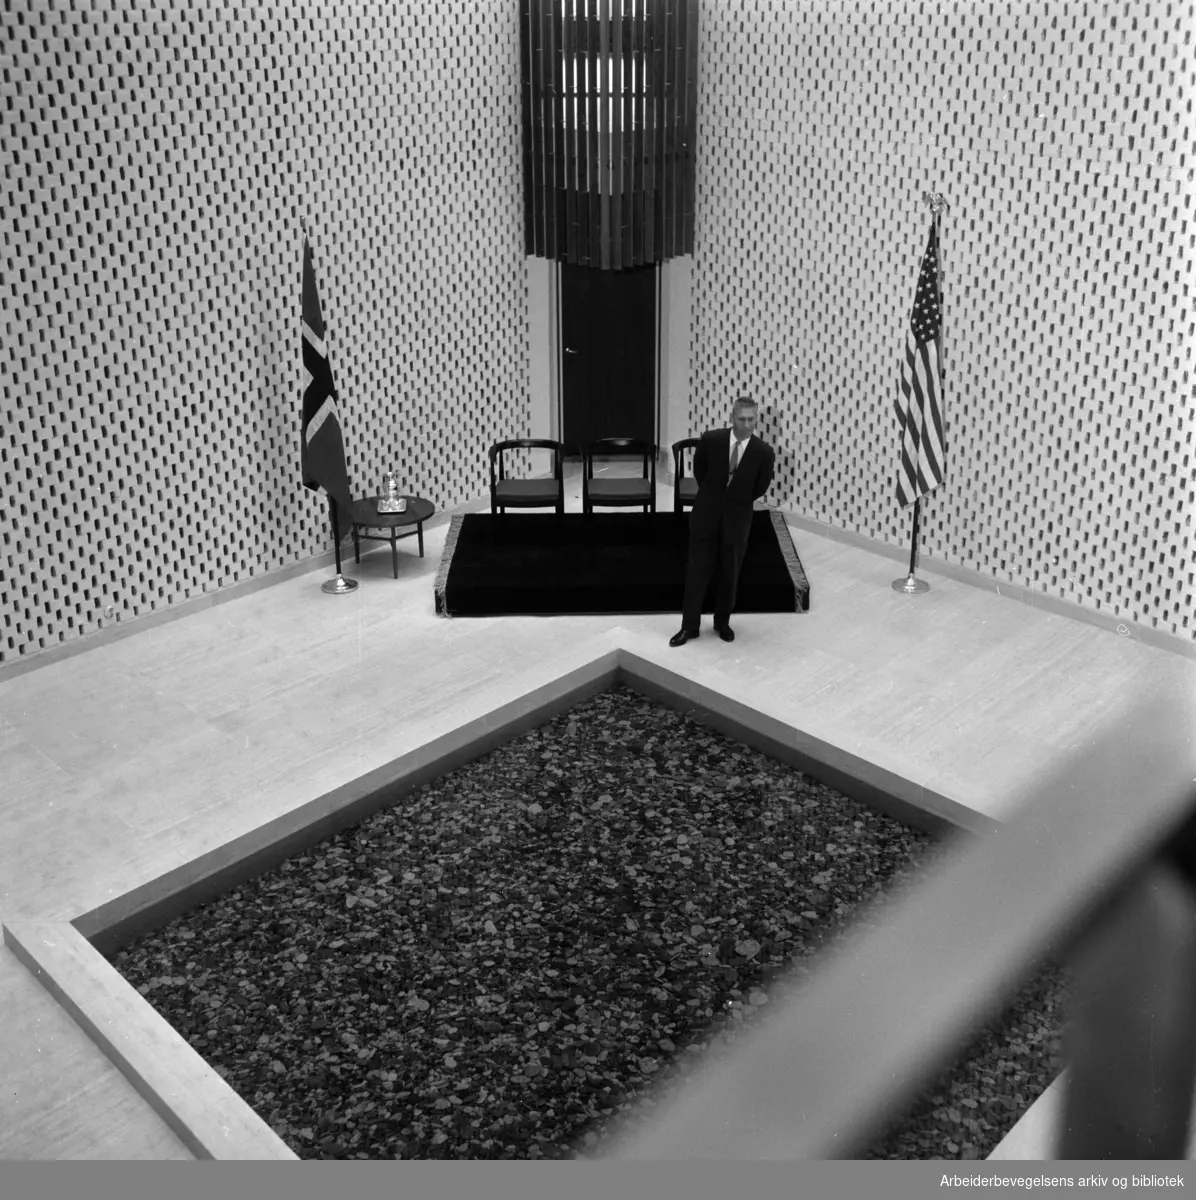 Amerikanske ambasade. Innvielsen. Interiører. Juni 1959